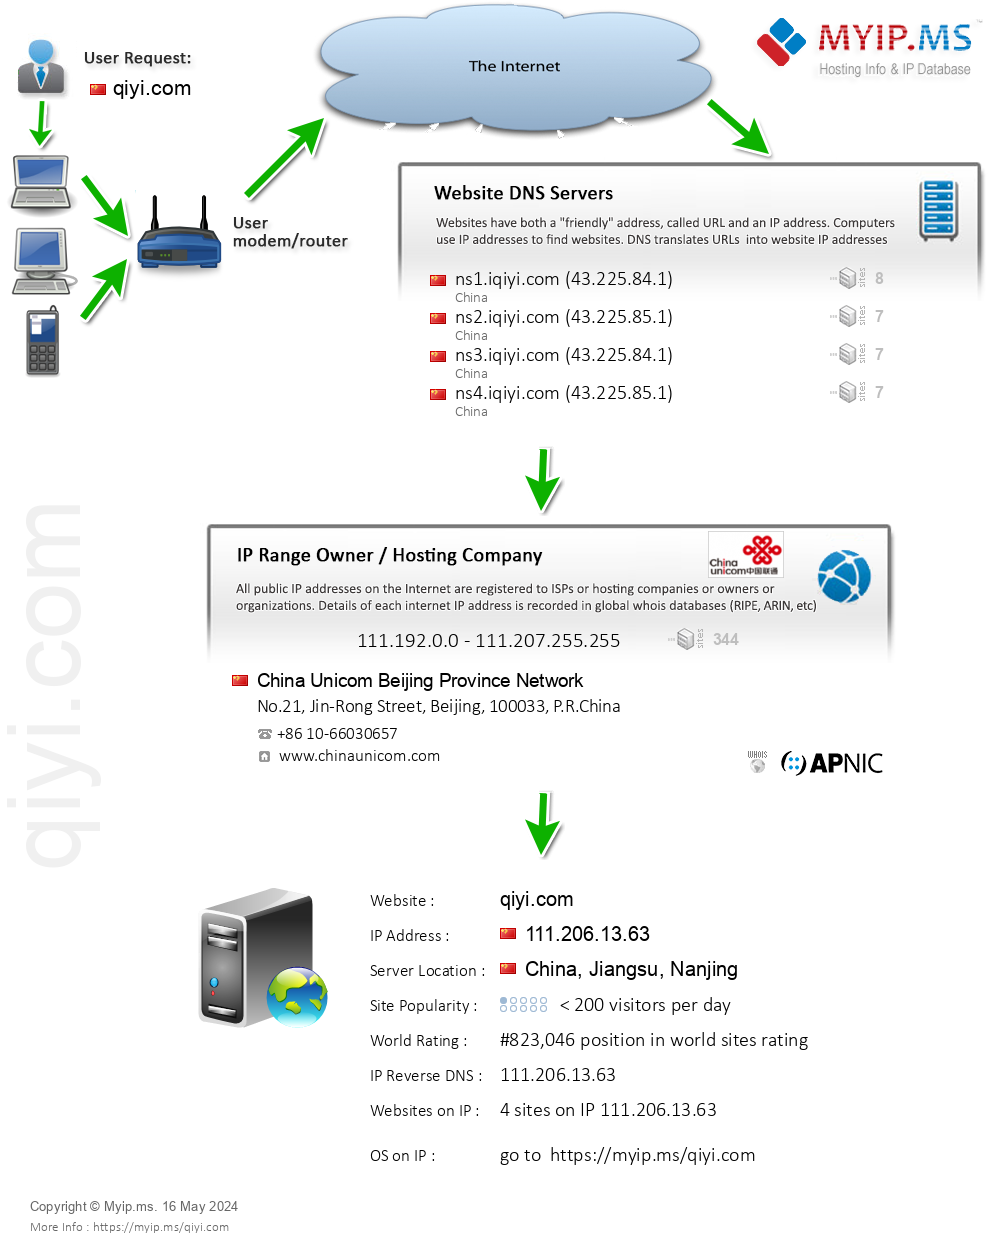 Qiyi.com - Website Hosting Visual IP Diagram